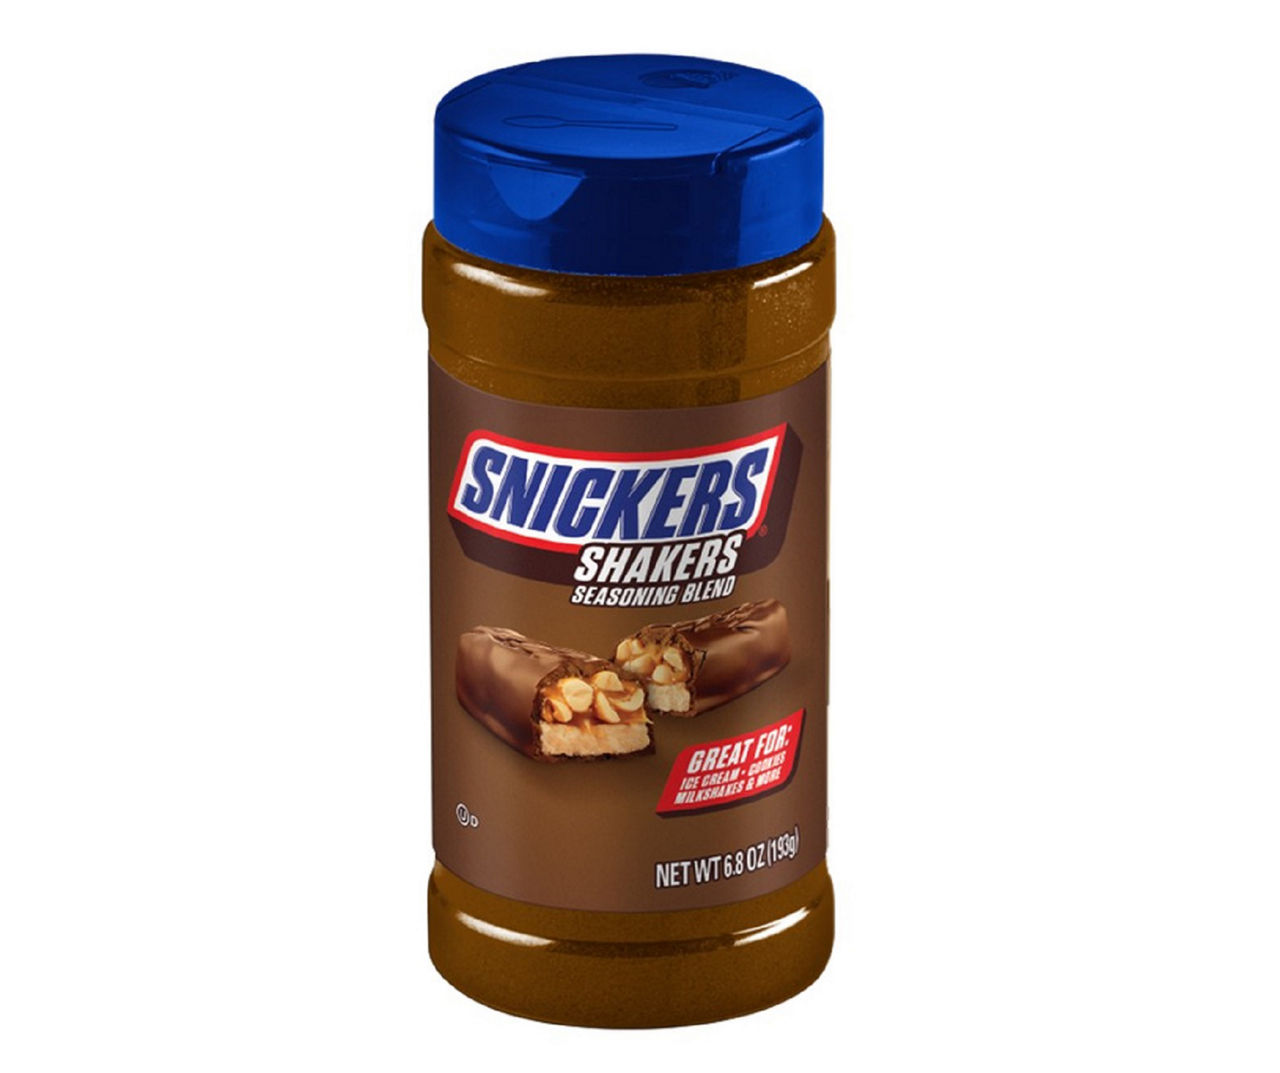 Mars Snickers Shakers Seasoning Blend – Martie